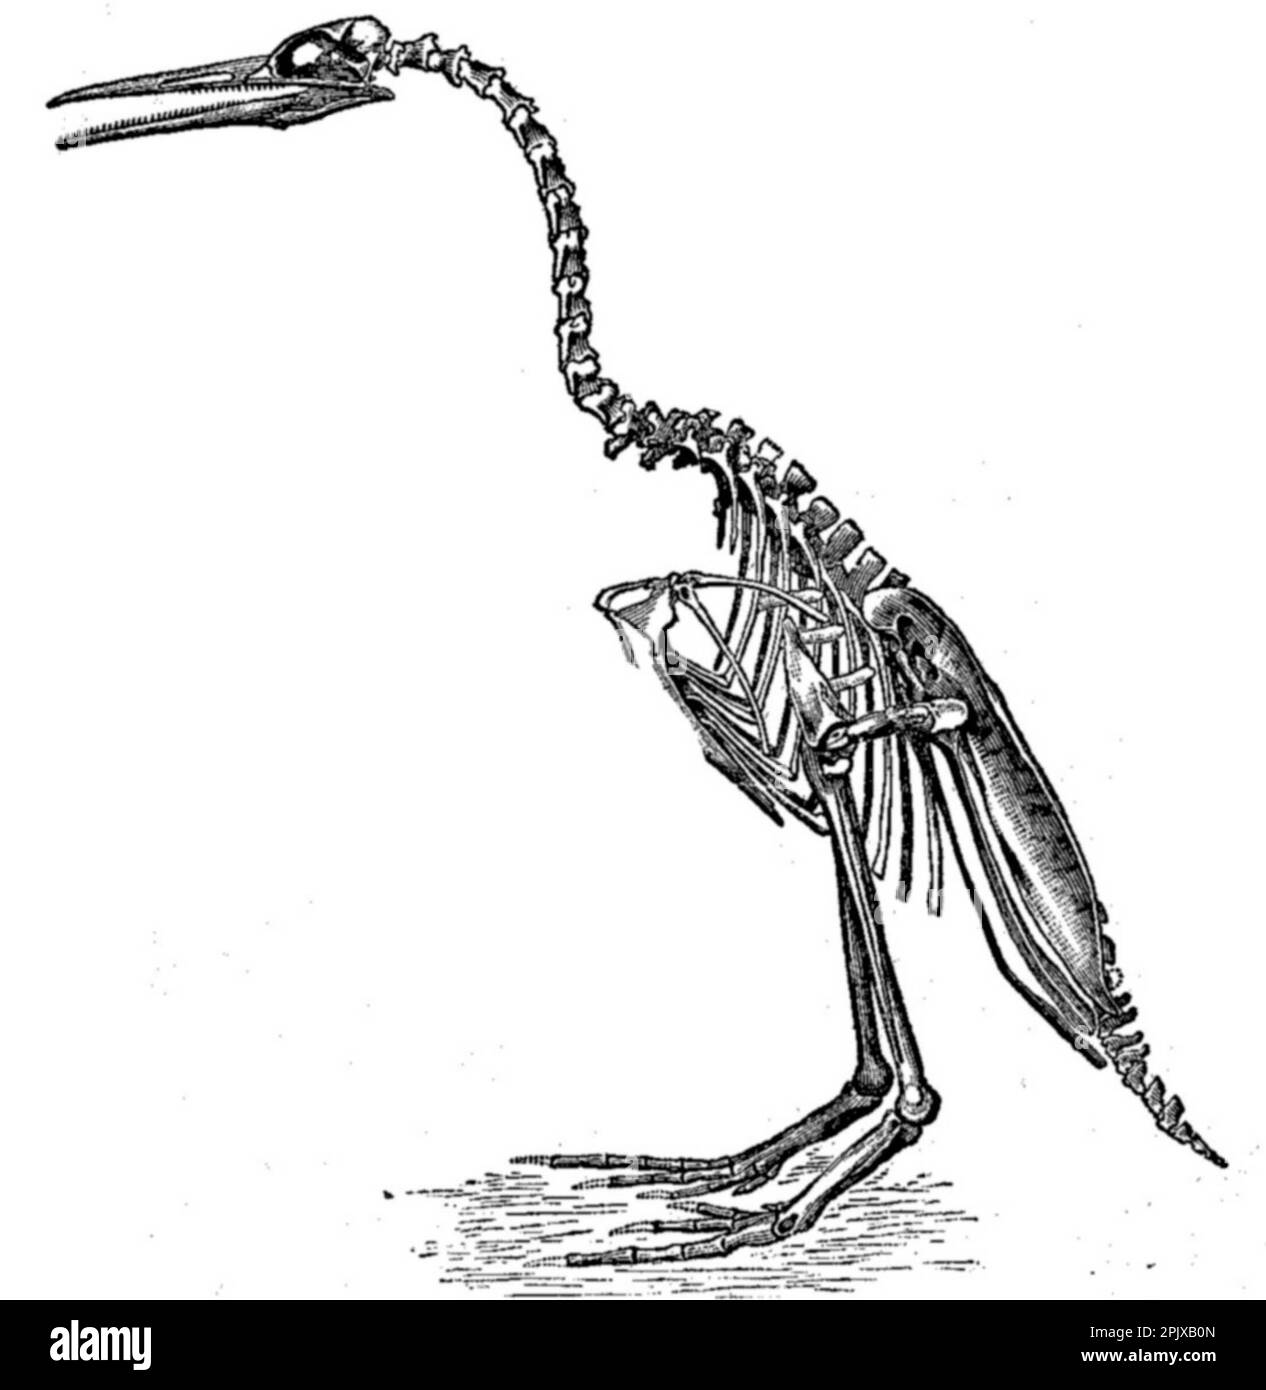 Hesperornis regalis, eine Art von altem, fliegenlosem Vogel mit Zähnen, gezeichnet von Othniel Marsh und veröffentlicht in seinem Buch Odontornithes: A Mongraph on the Extinct Tähed Birds of North America. Stockfoto